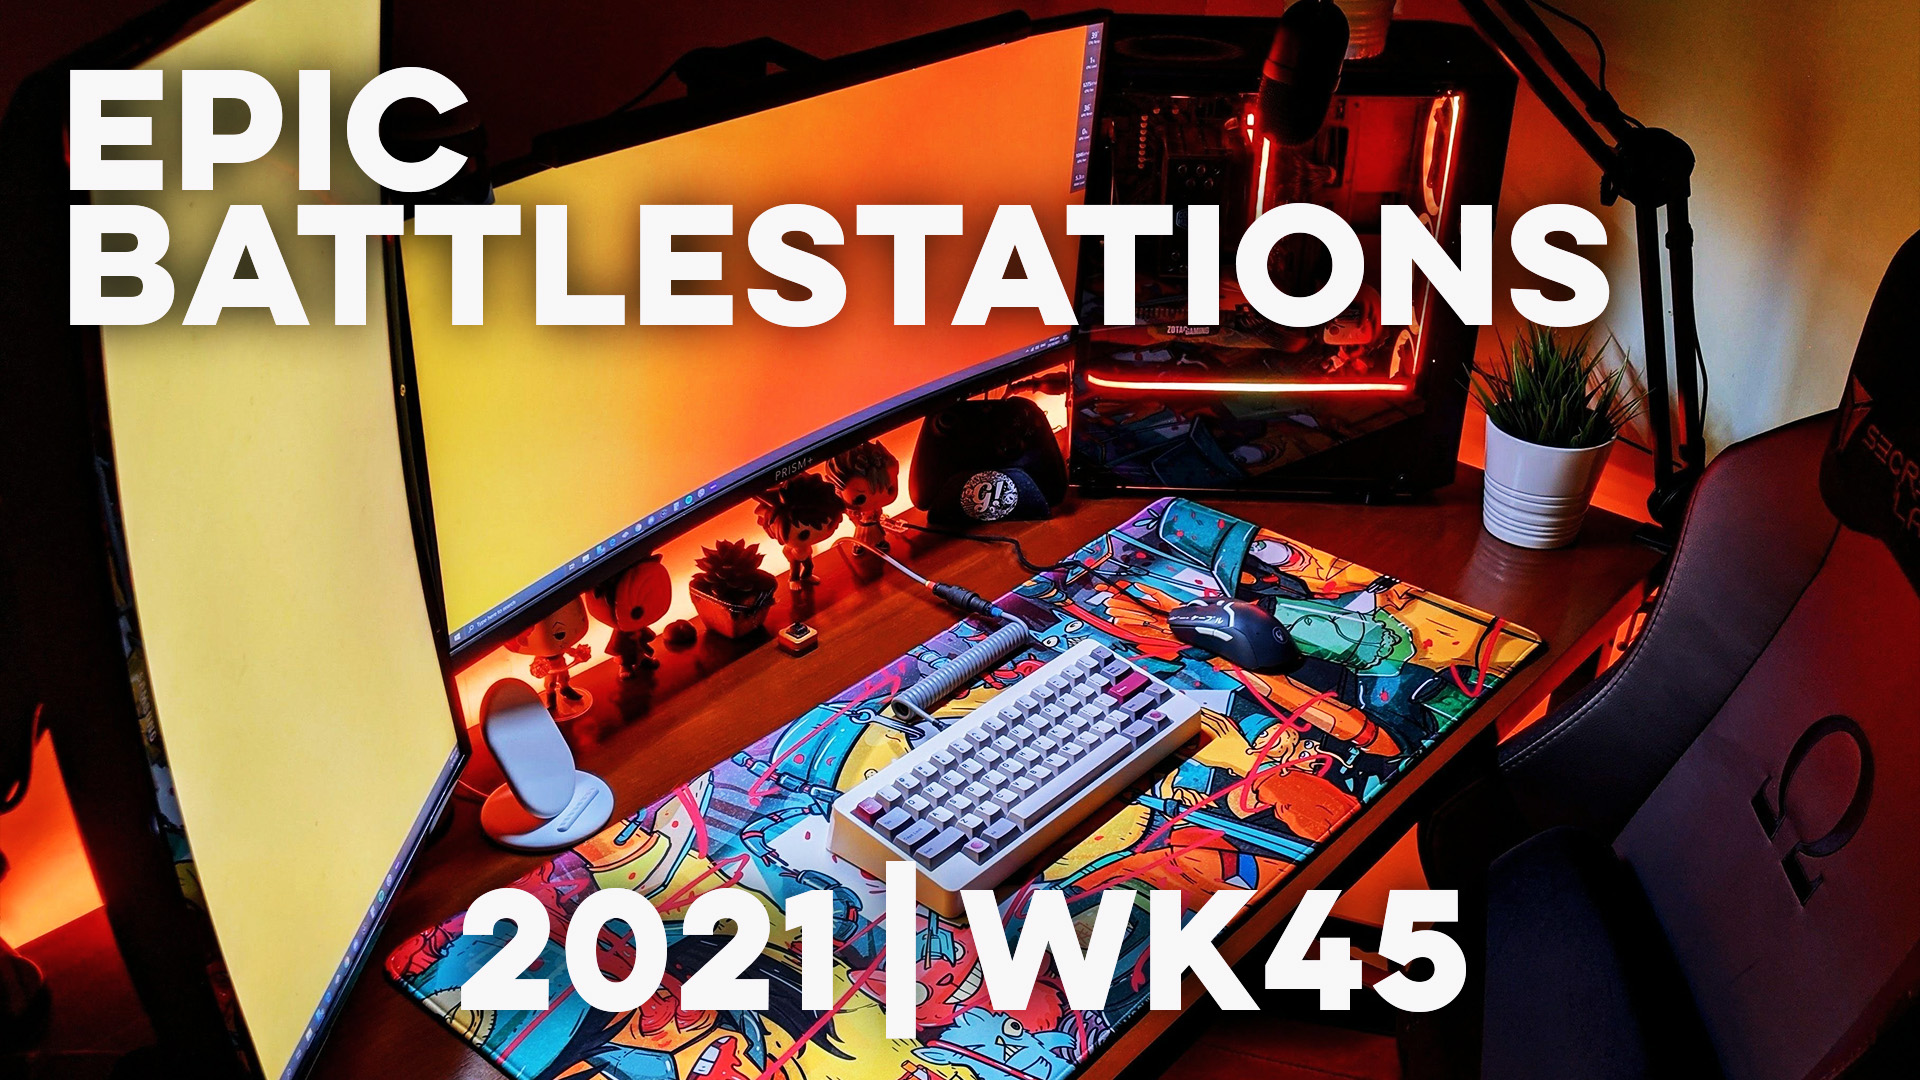 Top 10 EPIC Battlestations for 2021 Week 45!